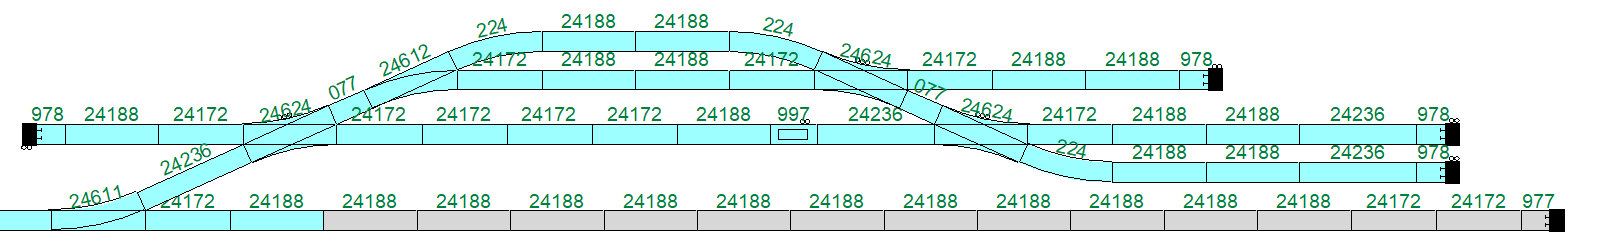 Kortere sporen 1 en 2, langer spoor 3 (b).png